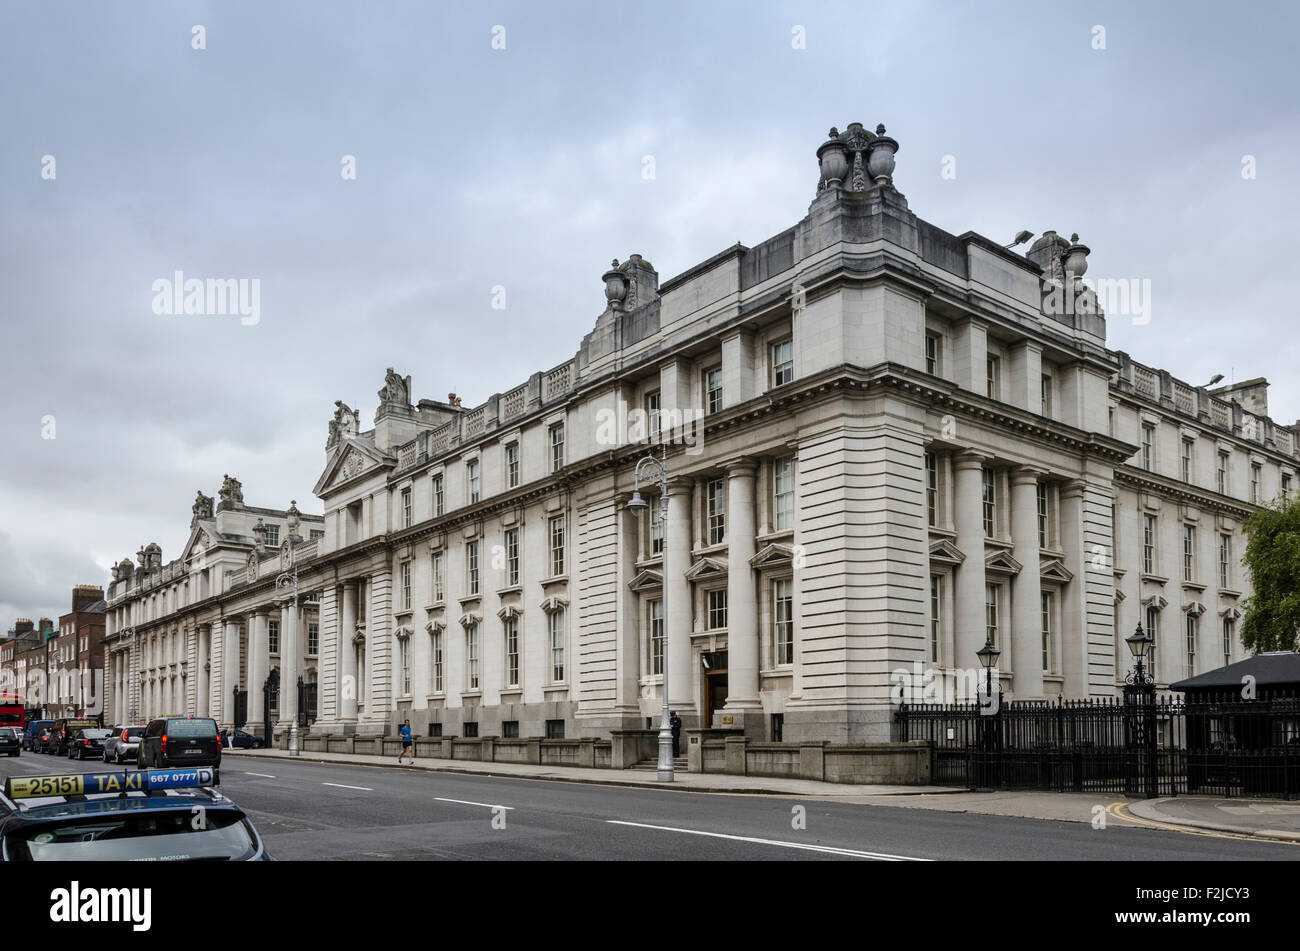 Government buildings, Merrion Street Upper, Dublin, Ireland Stock Photo